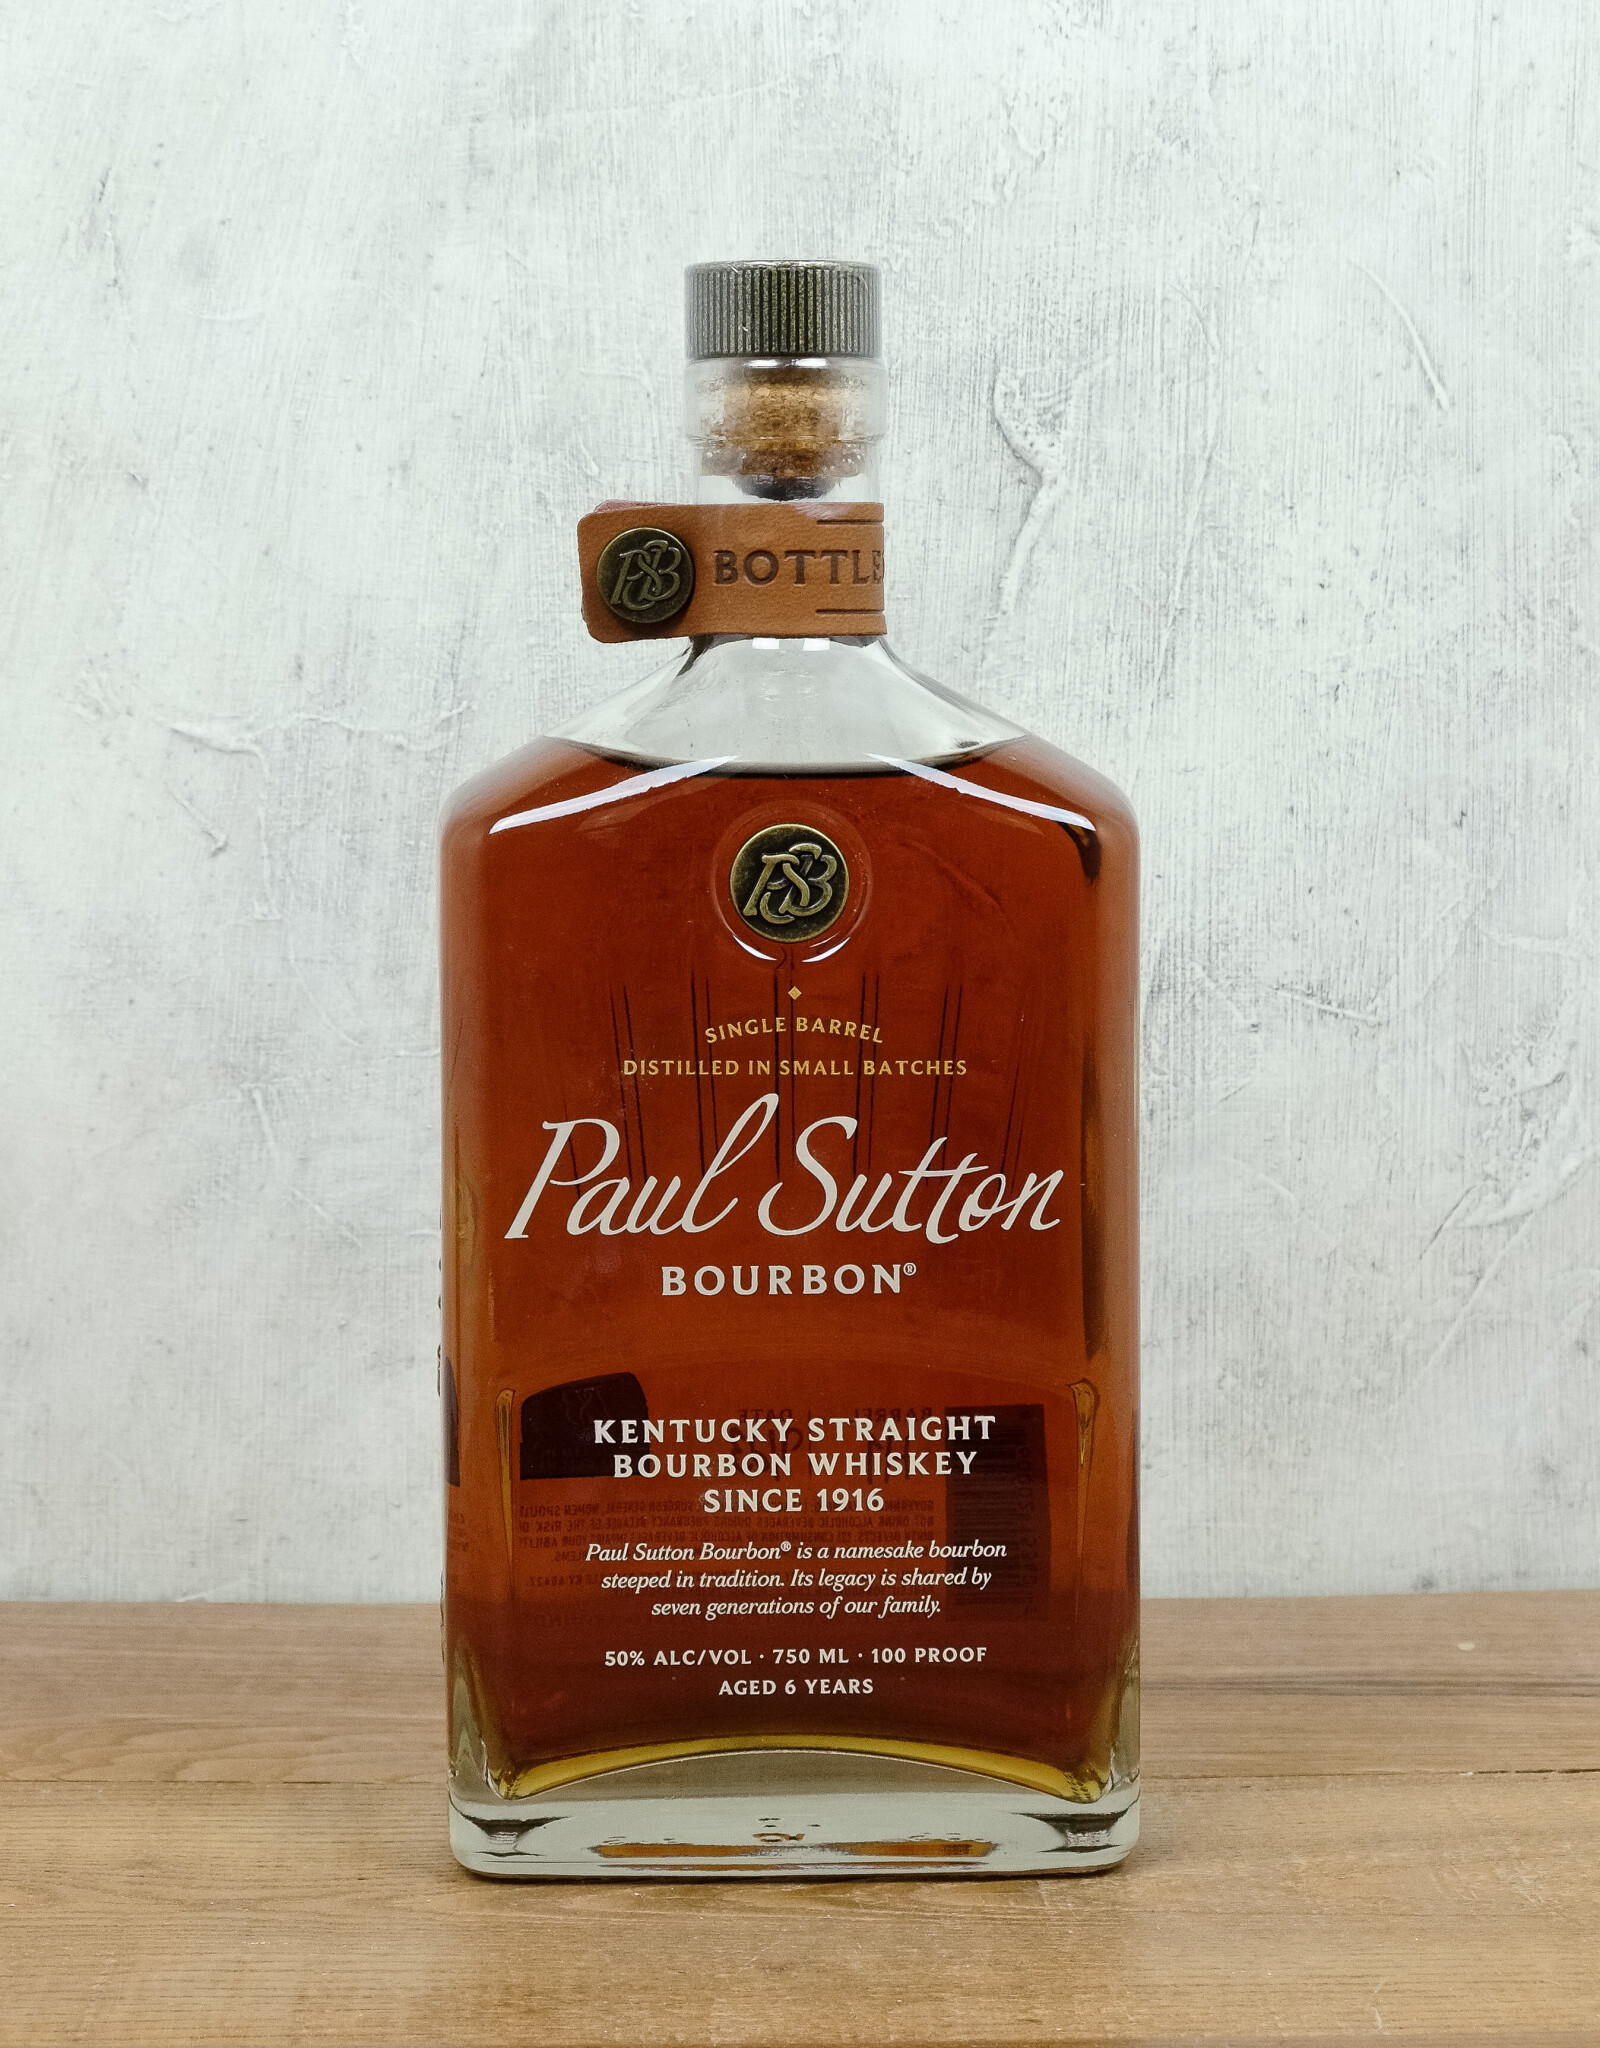 Paul Sutton Bourbon Bottled in Bond